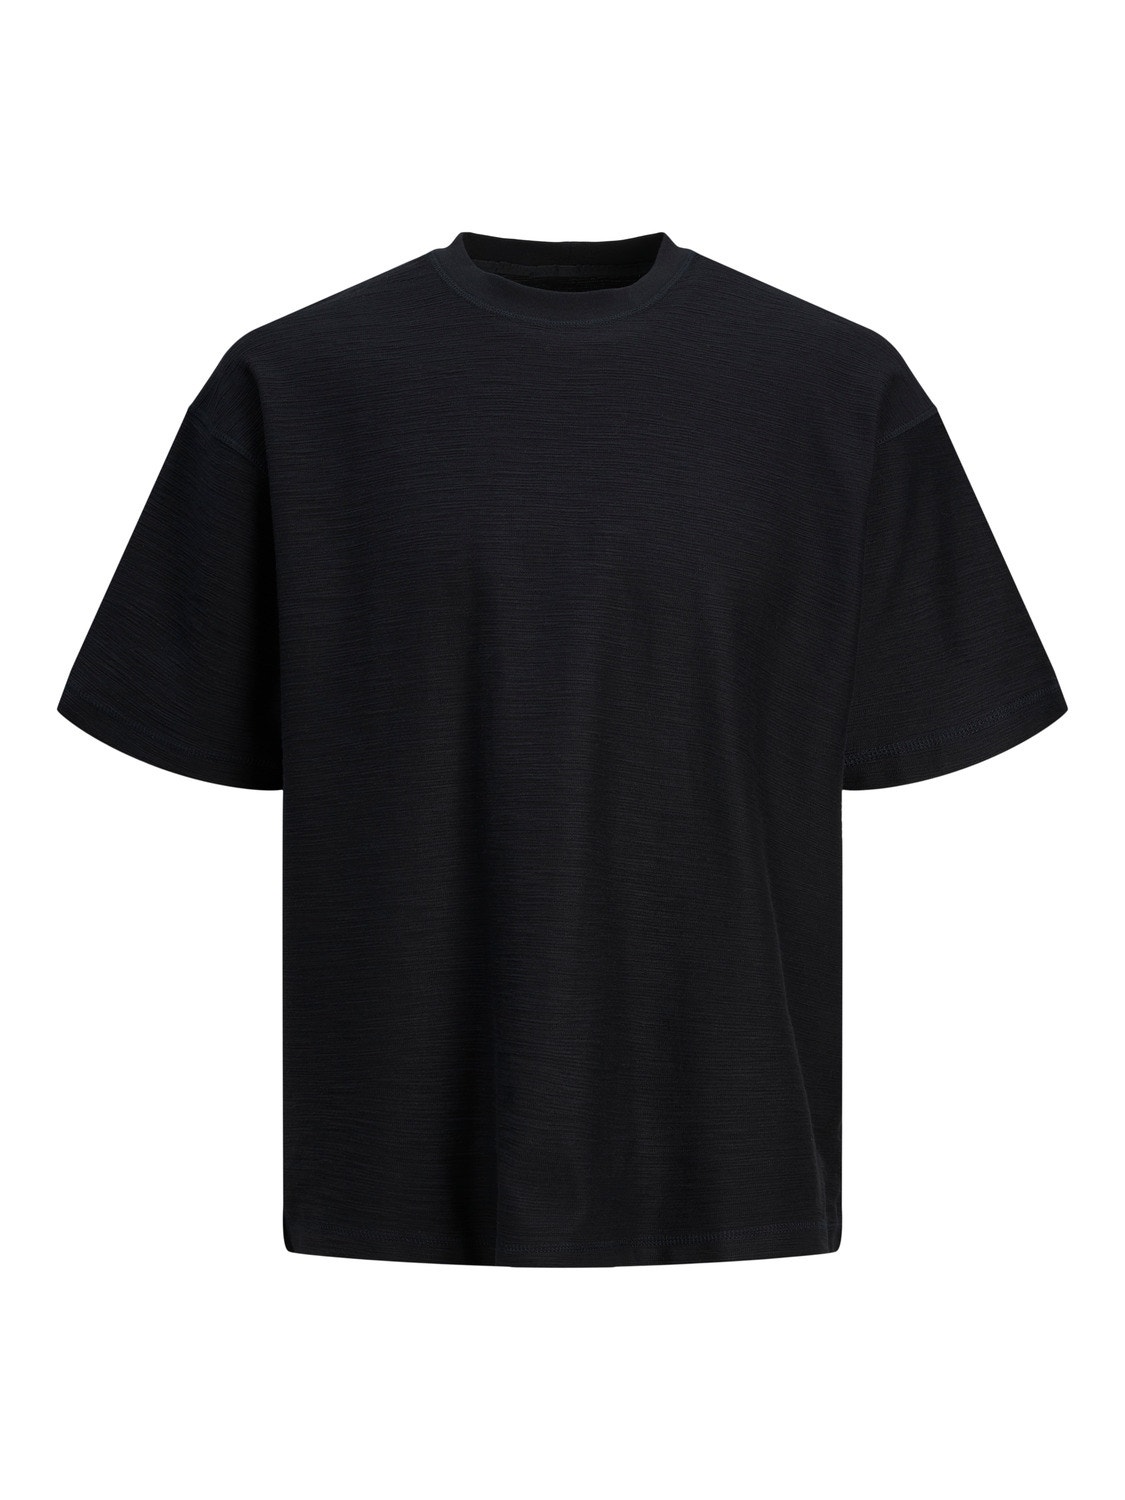 Jack & Jones Plain Crew neck T-shirt -Black Onyx - 12251348